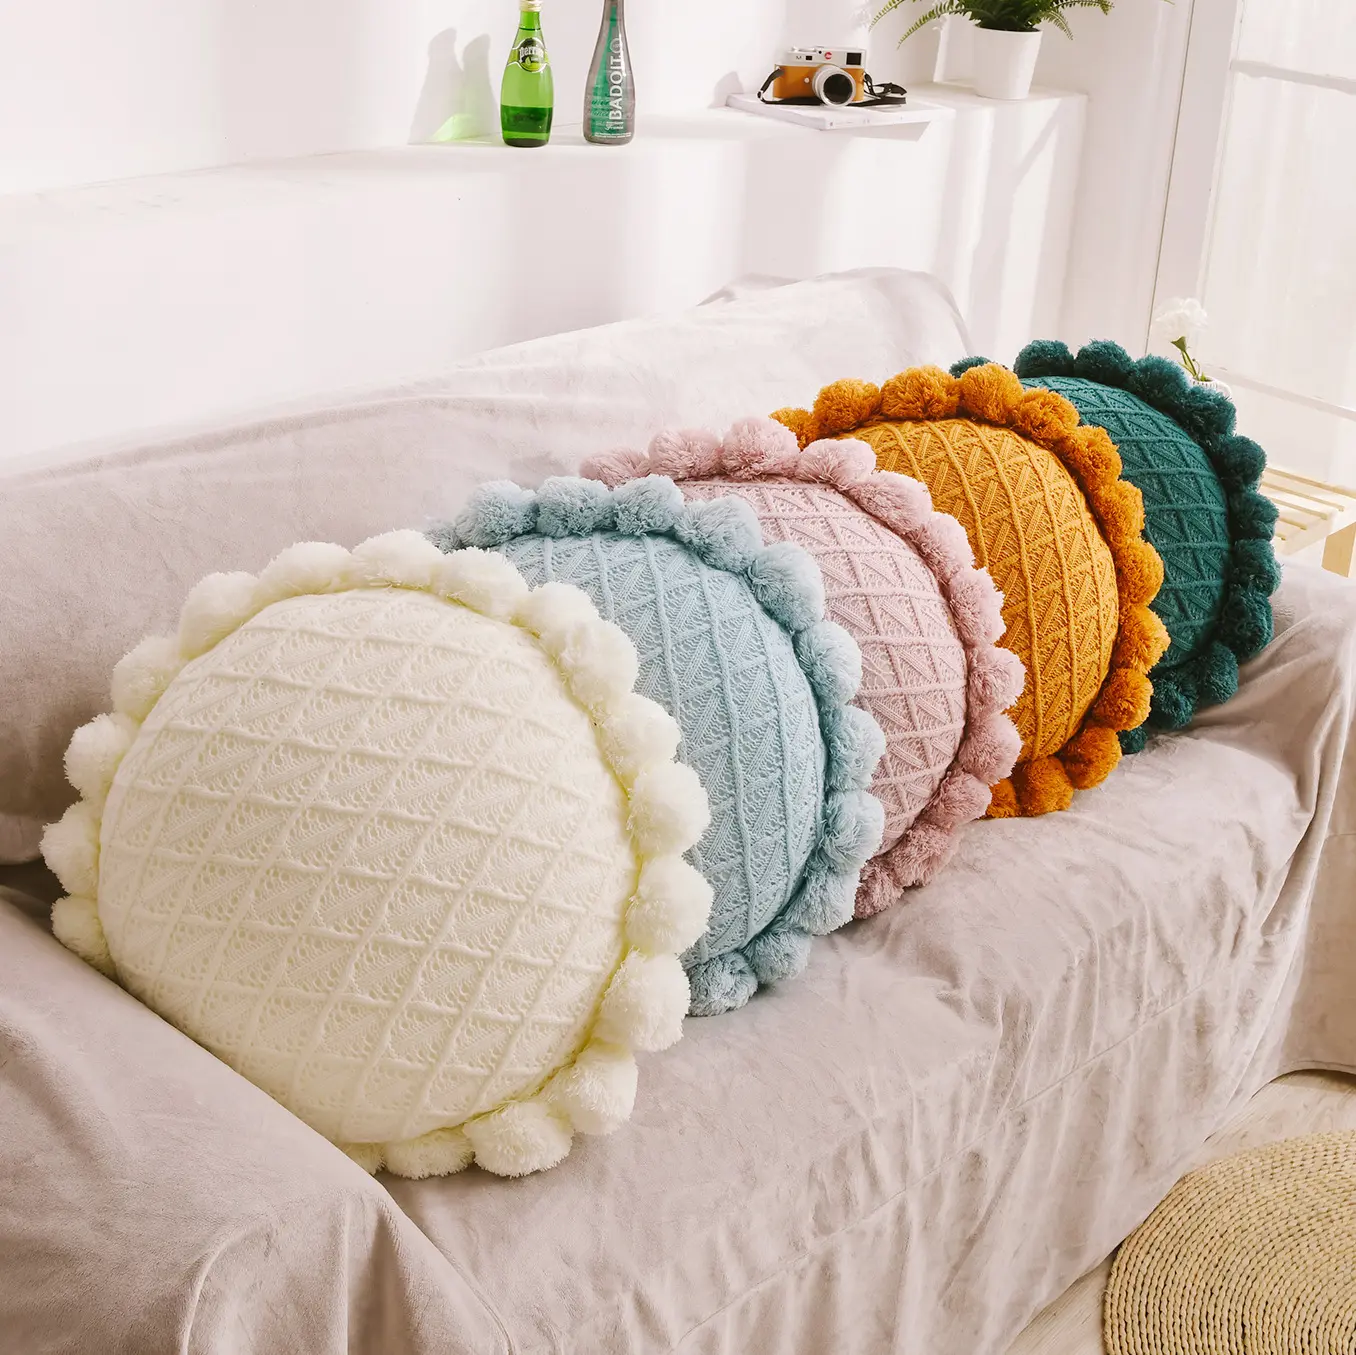 Almohada creativa para tejer con bolas, cojín para tejer, cojín para sofá, cojín redondo hueco tridimensional